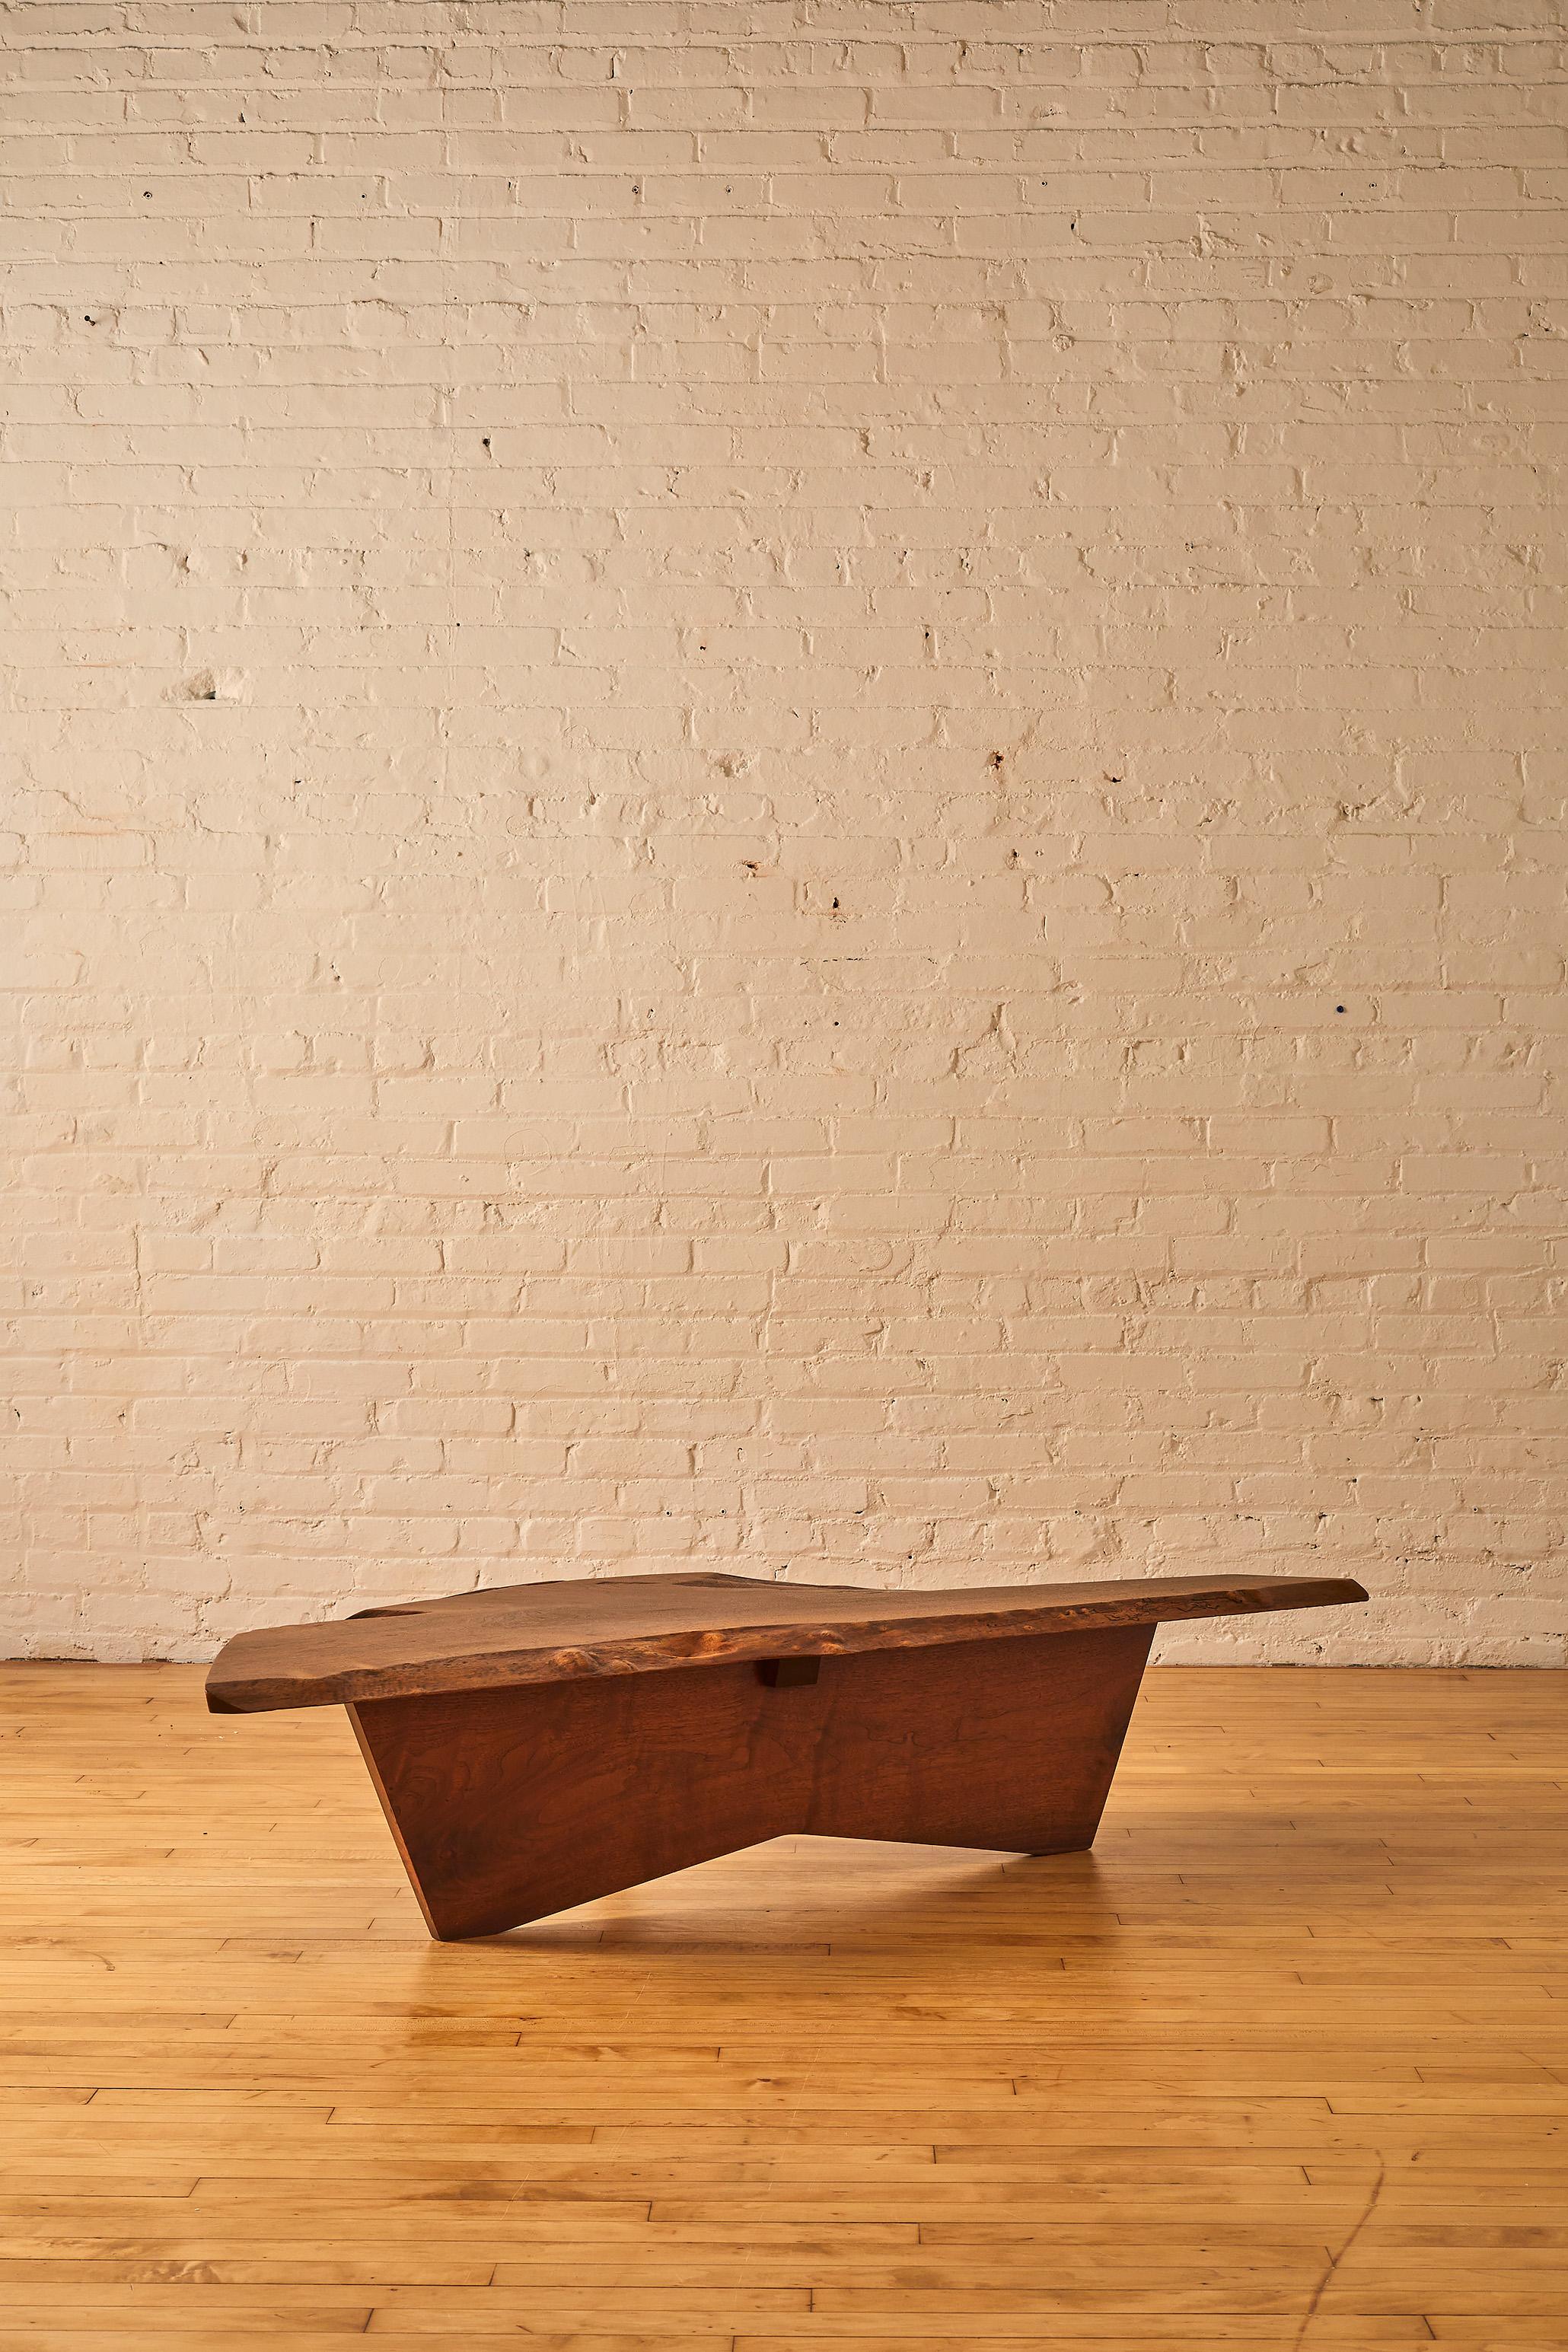 Une table basse originale en noyer par George Nakashima. 

A propos de George Nakashima :

George Katsutoshi Nakashima était un menuisier, un architecte et un fabricant de meubles américain qui a été l'un des principaux innovateurs du design de